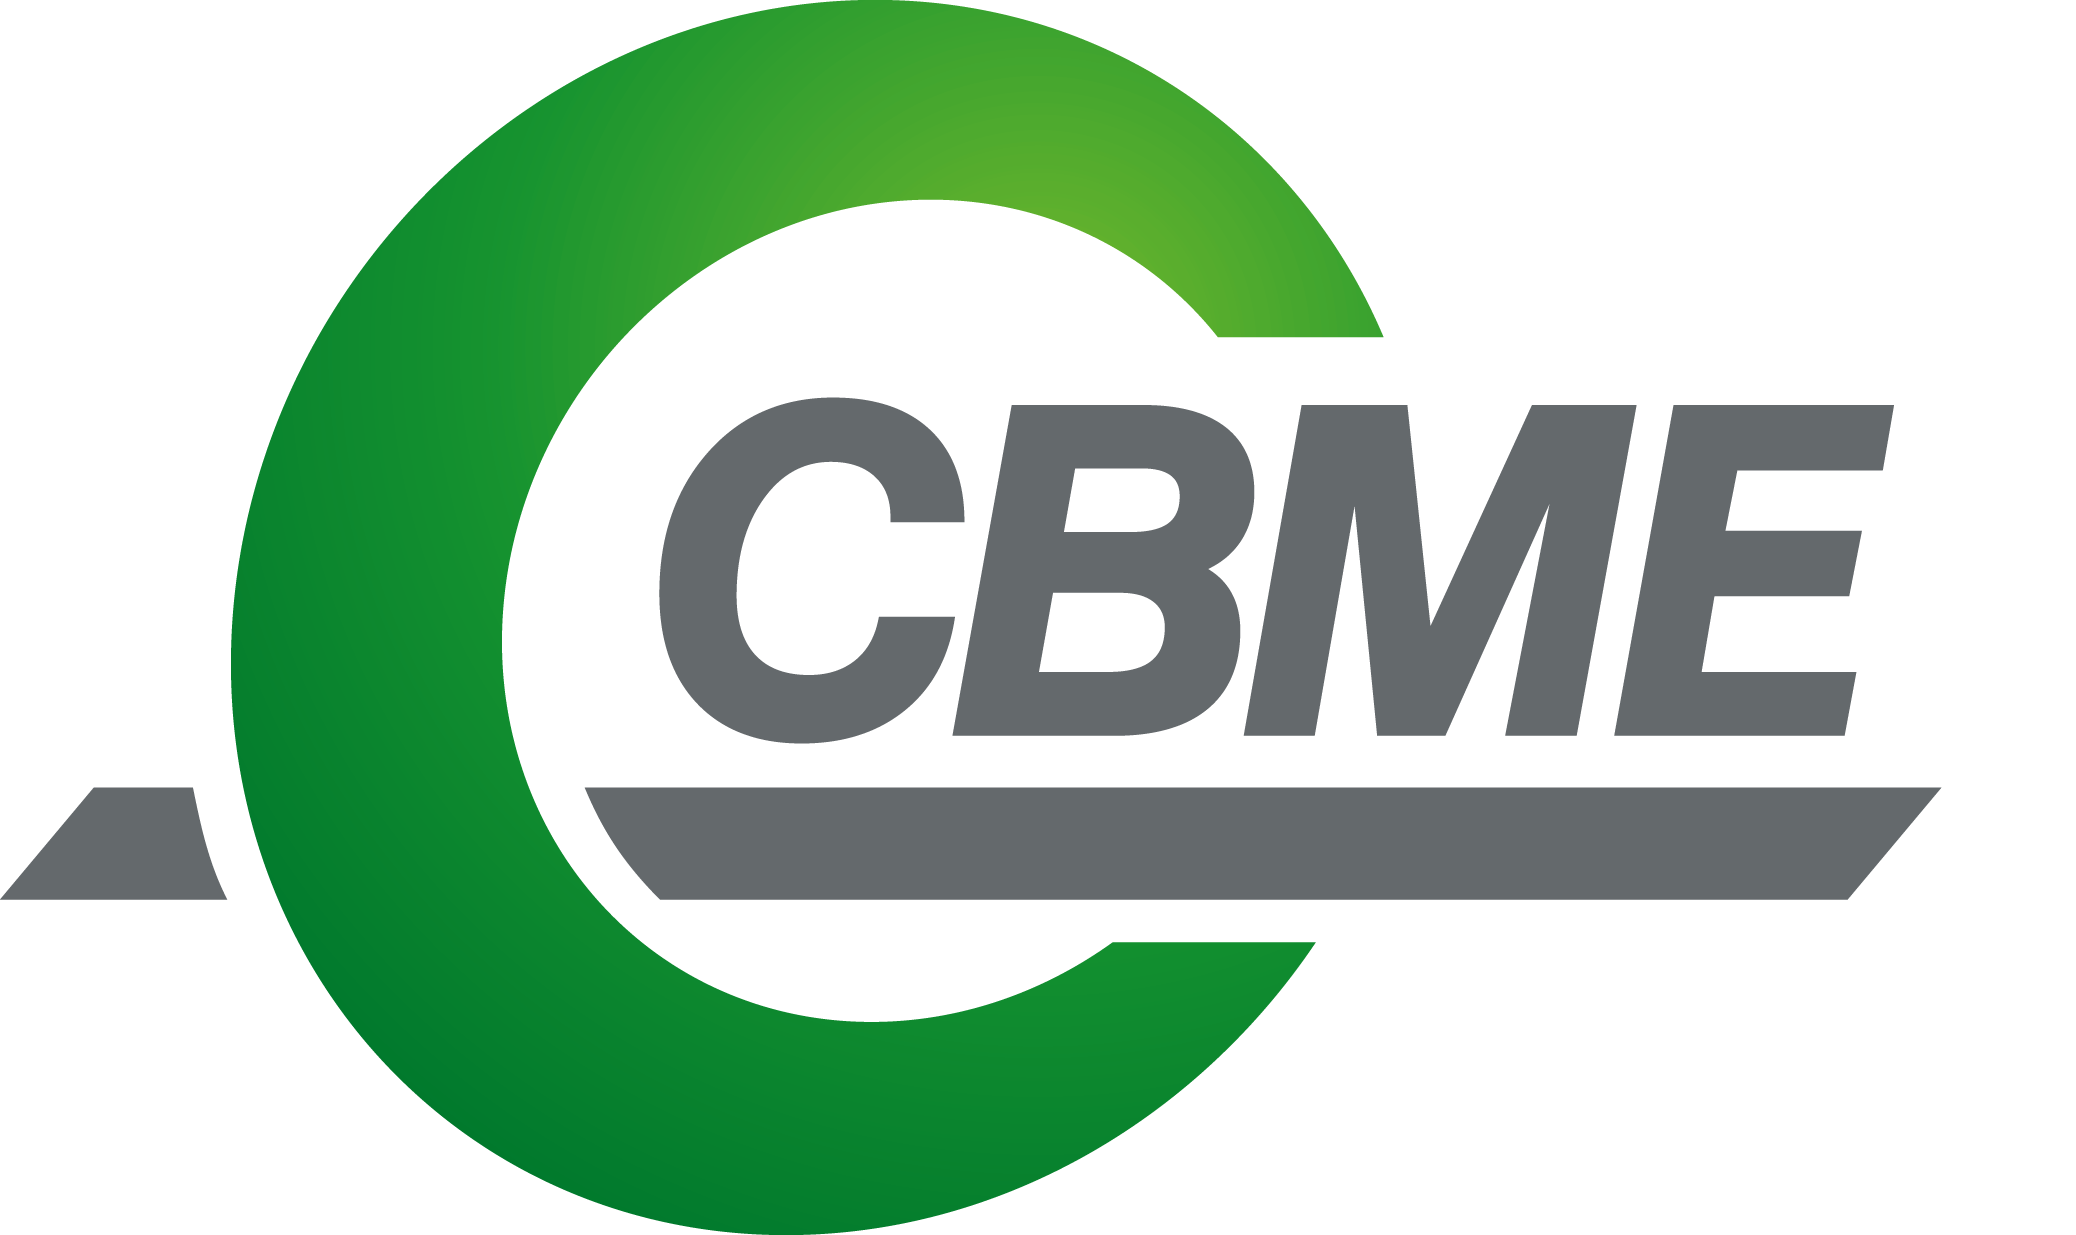 中国北京国际散料输送、装卸技术装备展览会-CBME 2019